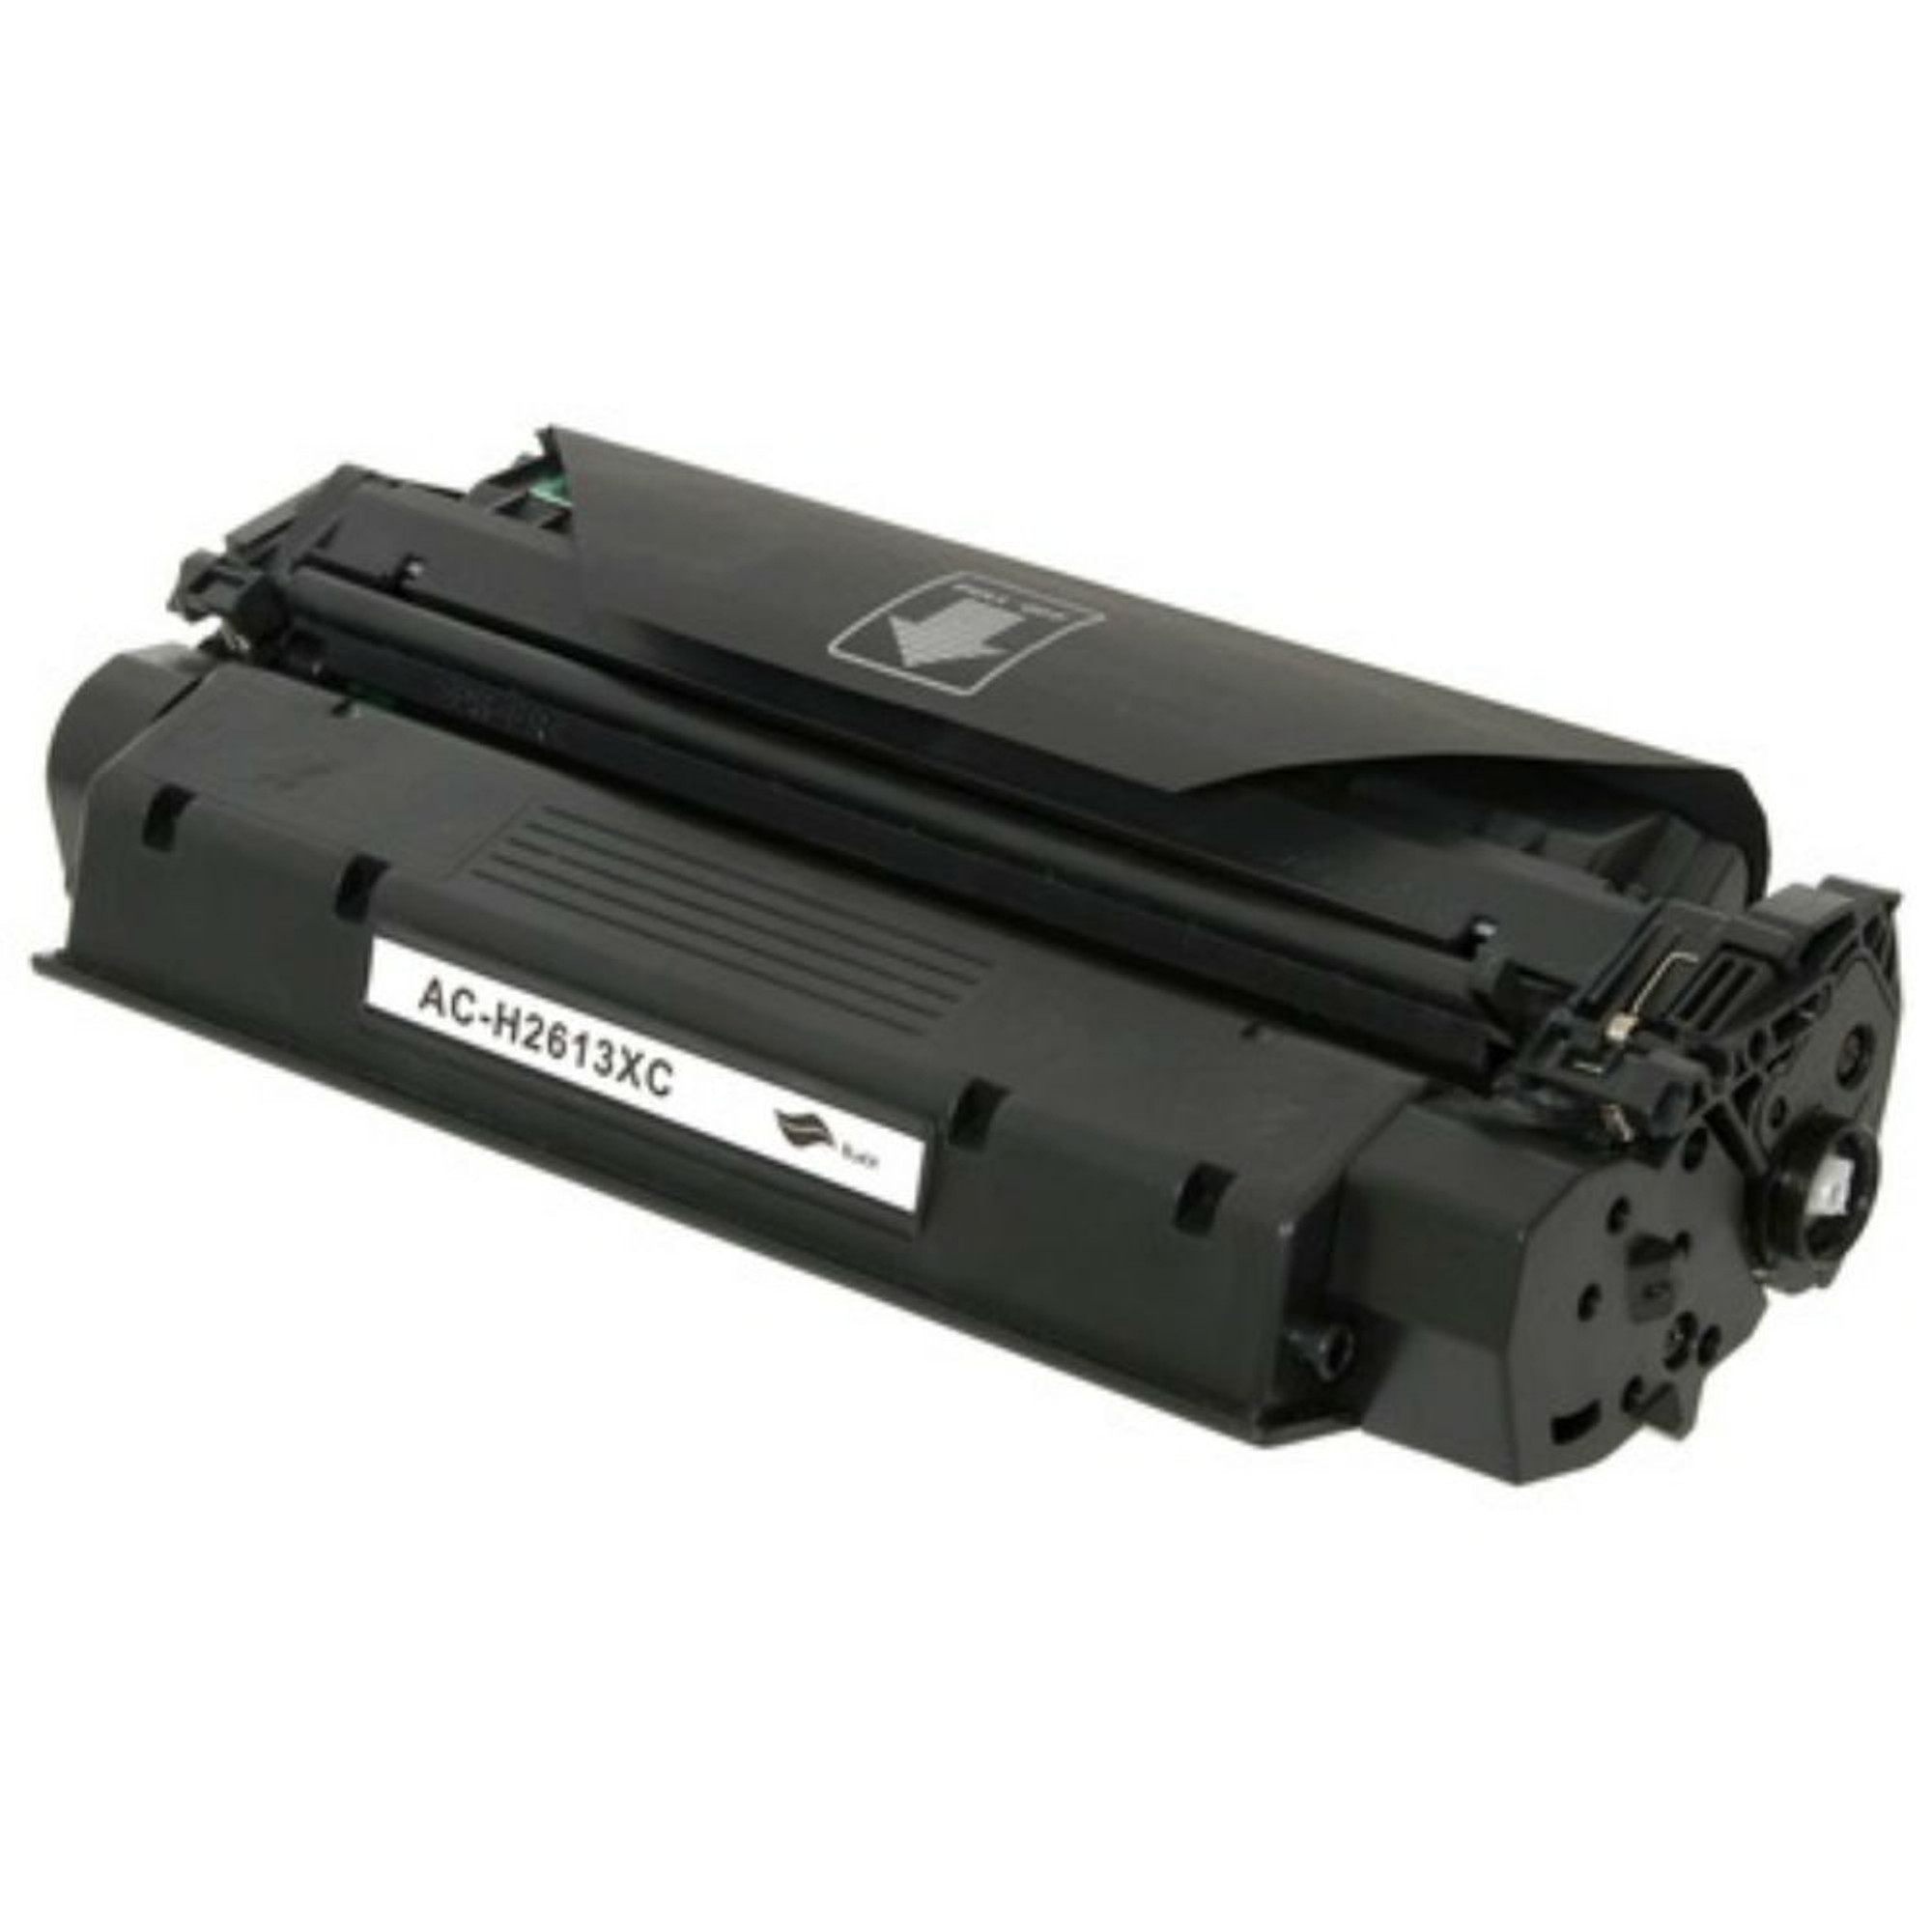 MICR Toner for the HP Laserjet 1300, 1300n, & 1300xi Printers